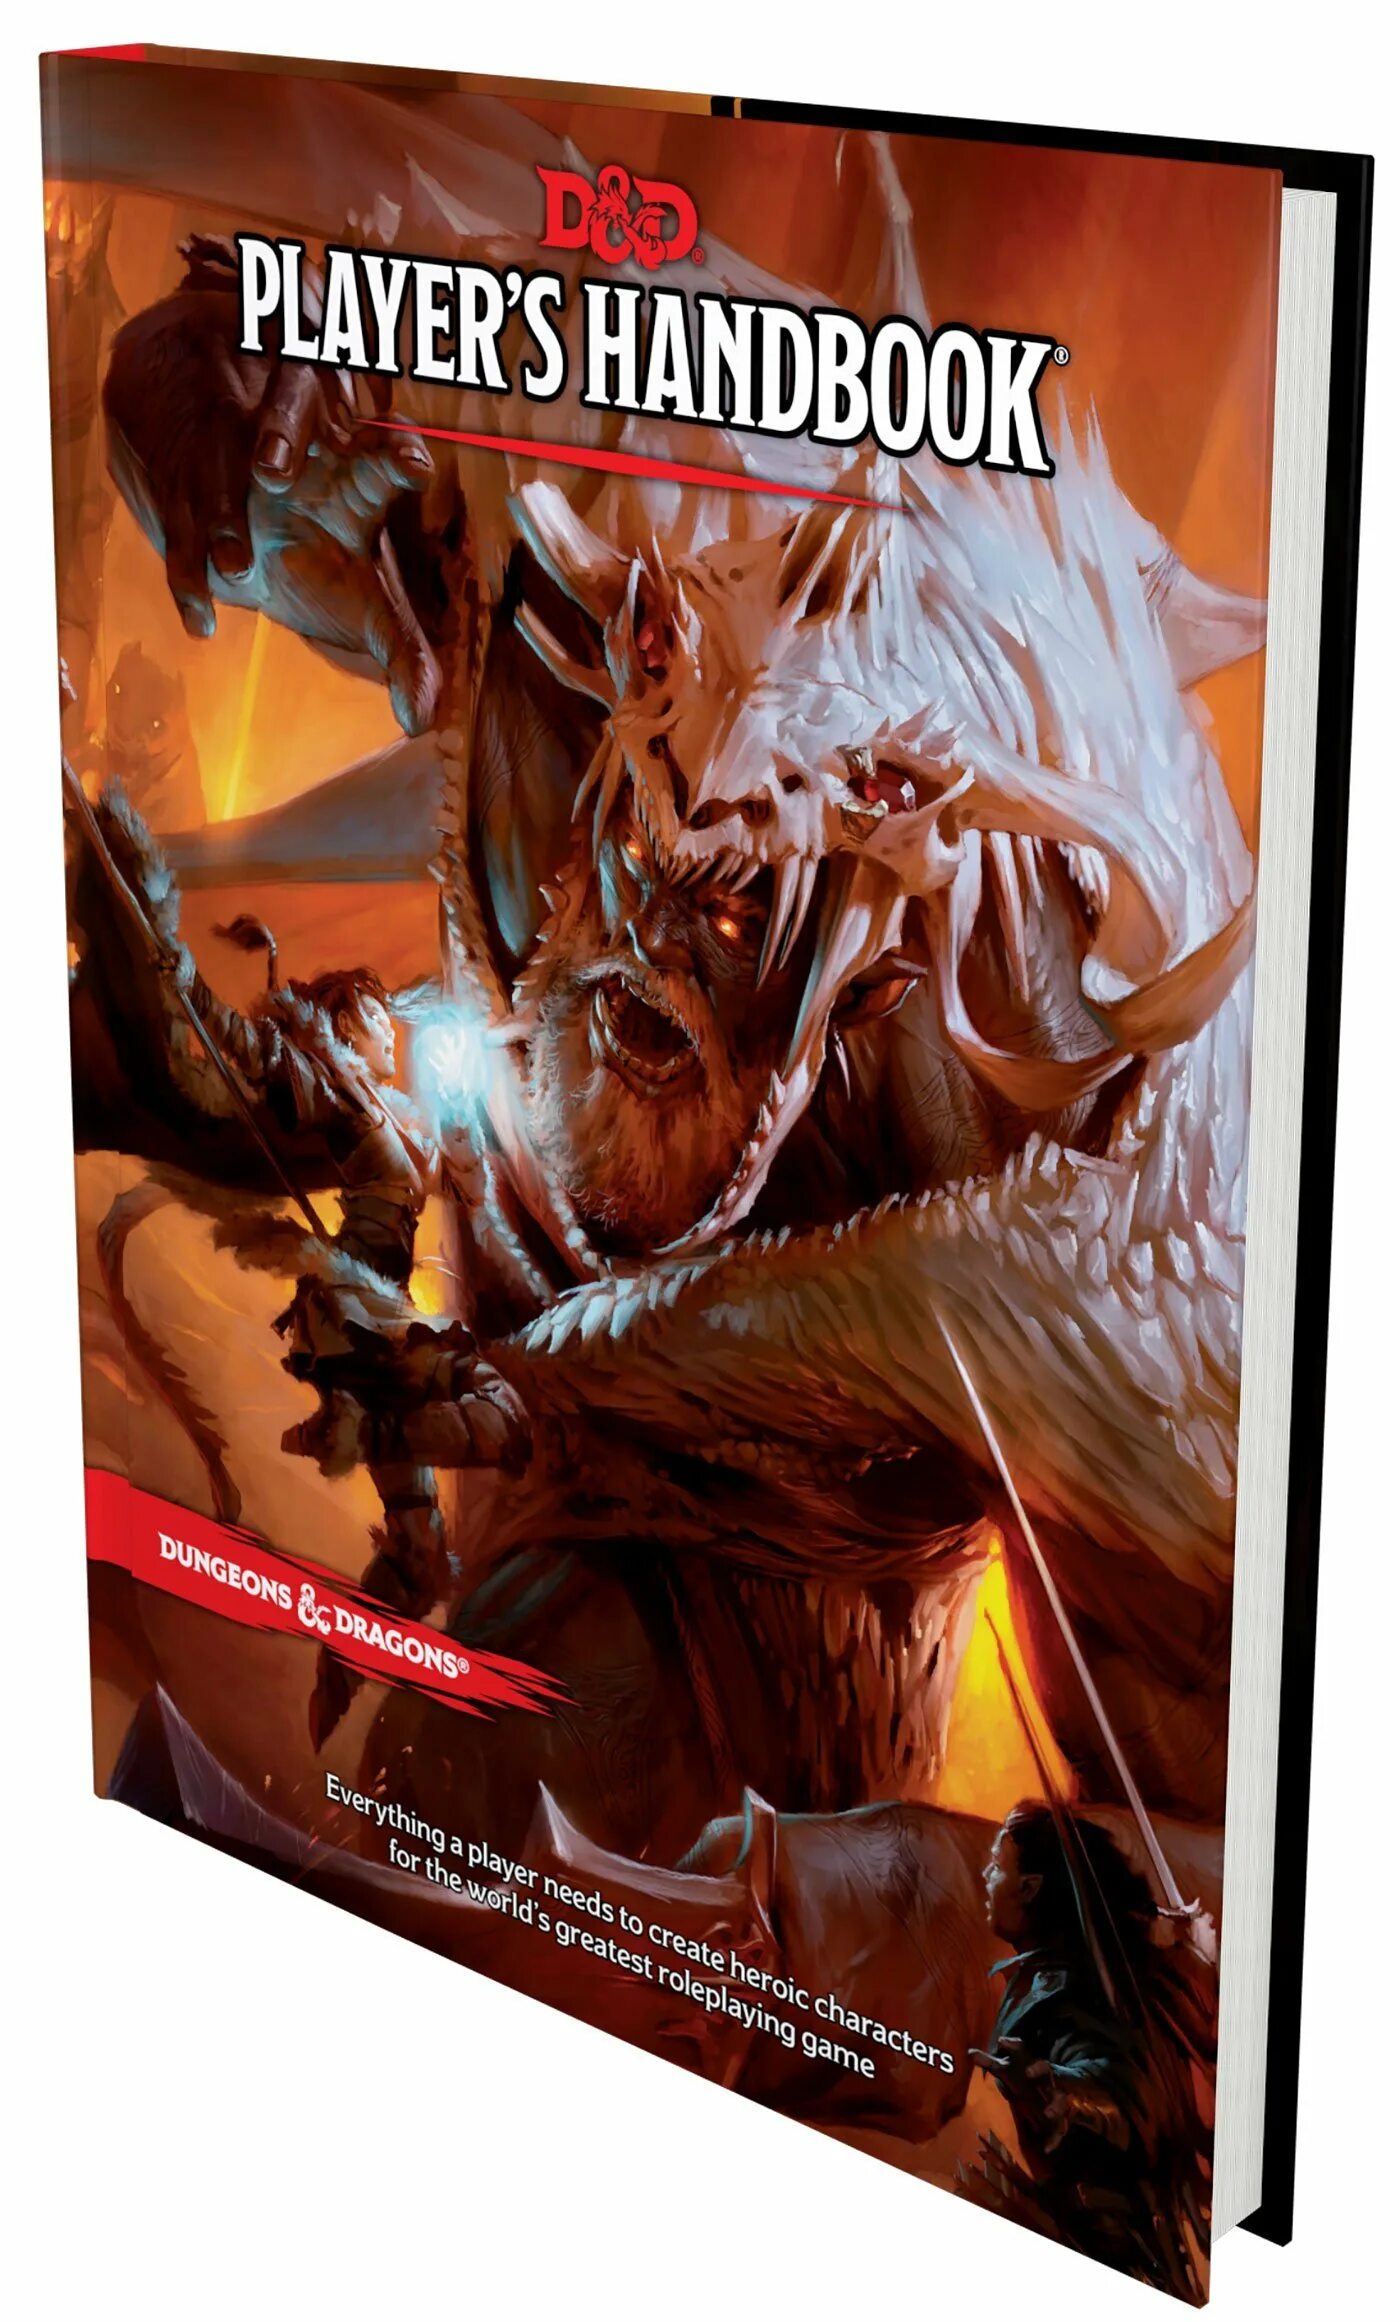 Players handbook. Dungeons and Dragons Player's Handbook. Players book d&d. Подземелье и драконы обложка.